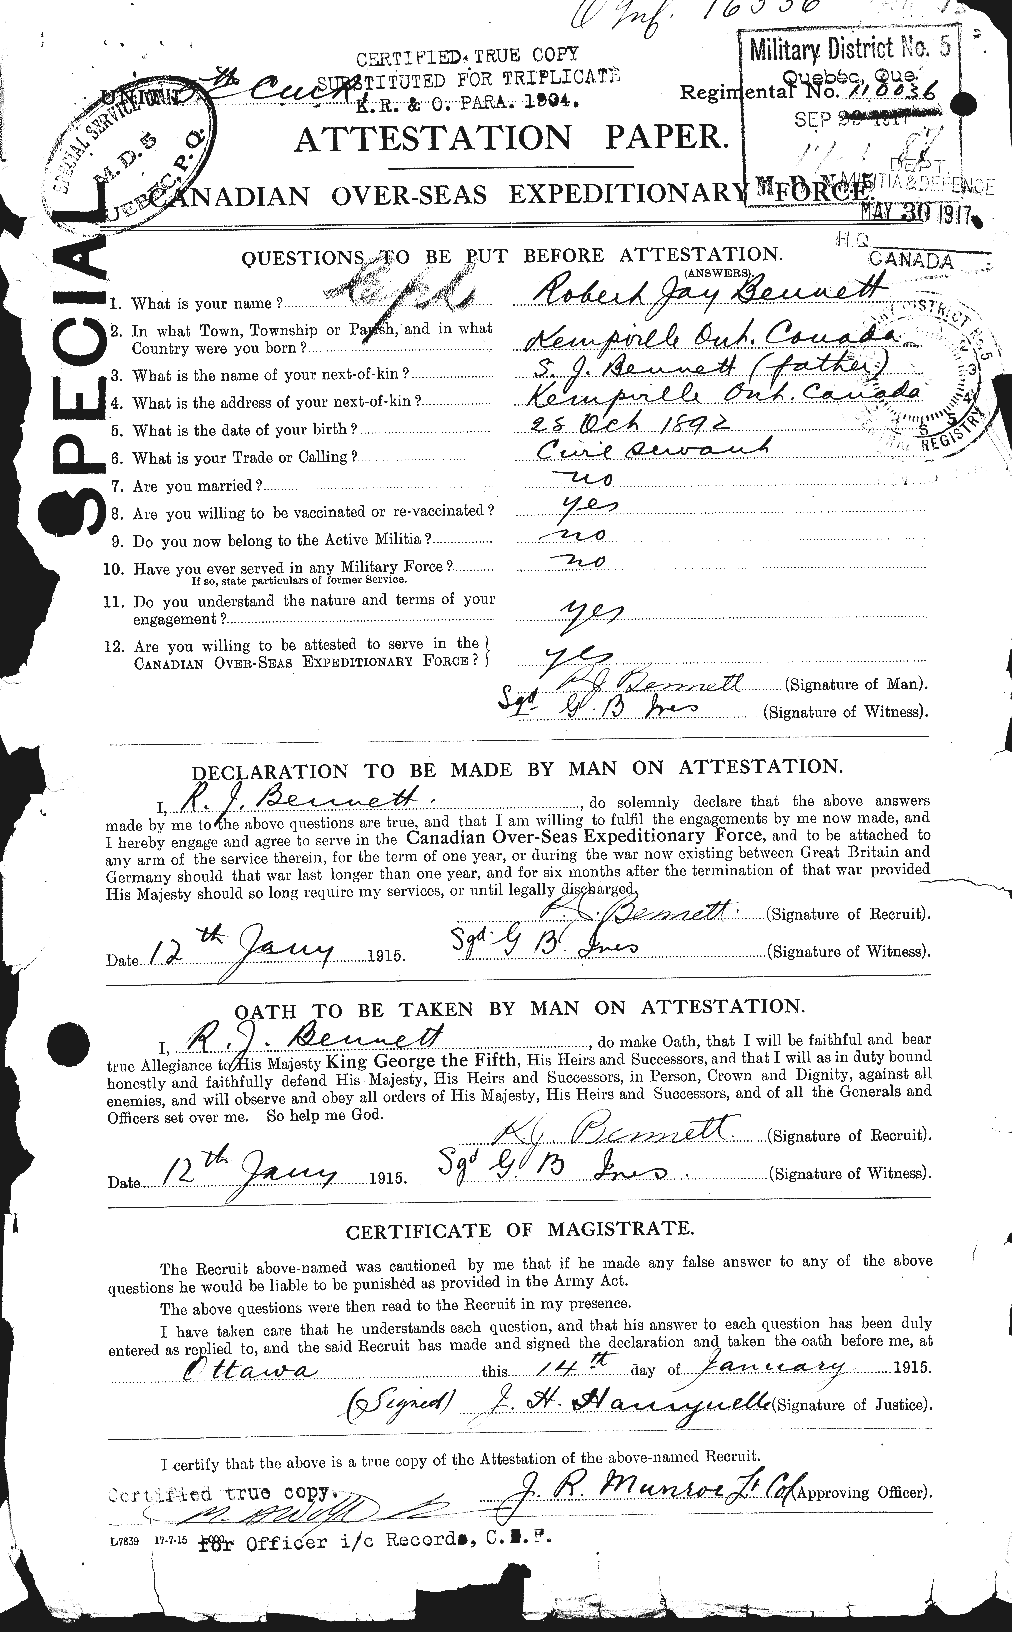 Dossiers du Personnel de la Première Guerre mondiale - CEC 239877a